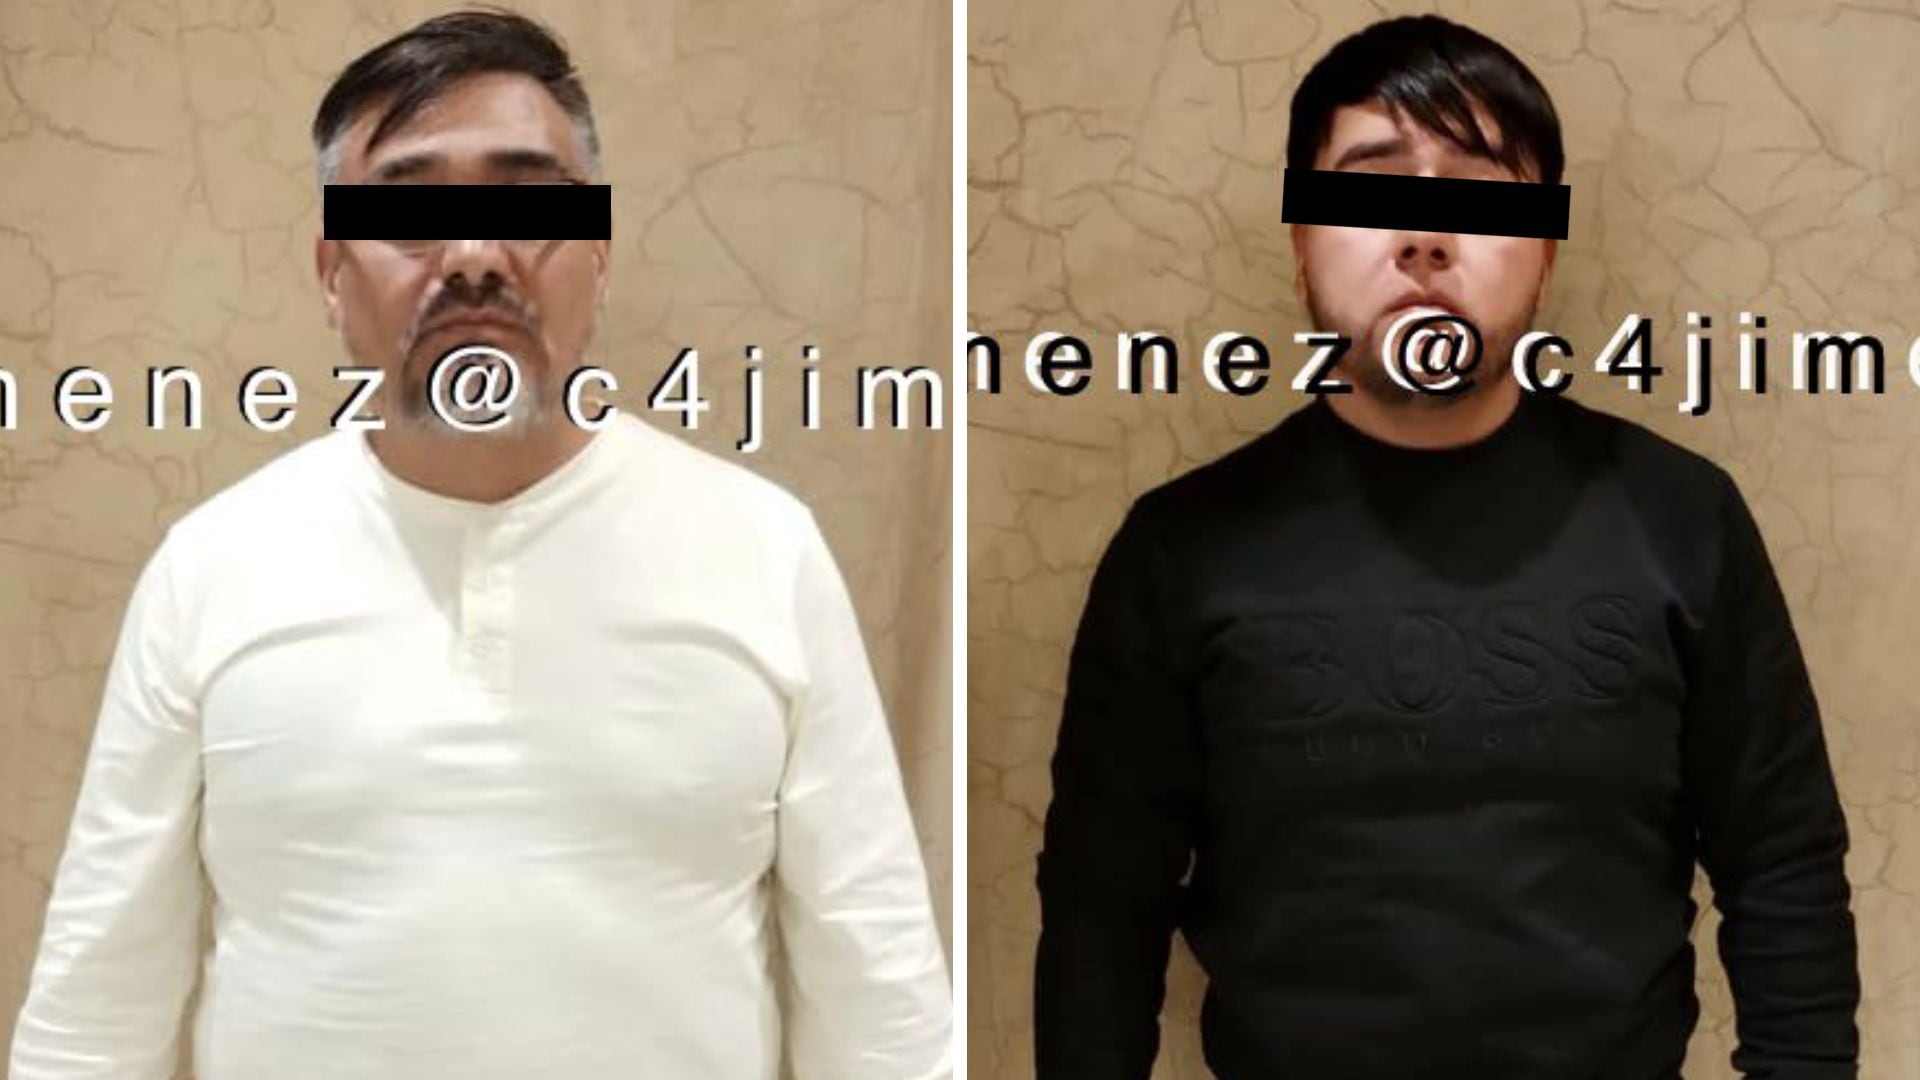 Fabián Solís y Fabián Solis Jr. fueron arrestados en un mismo domicilio. (X/@c4jimenez)